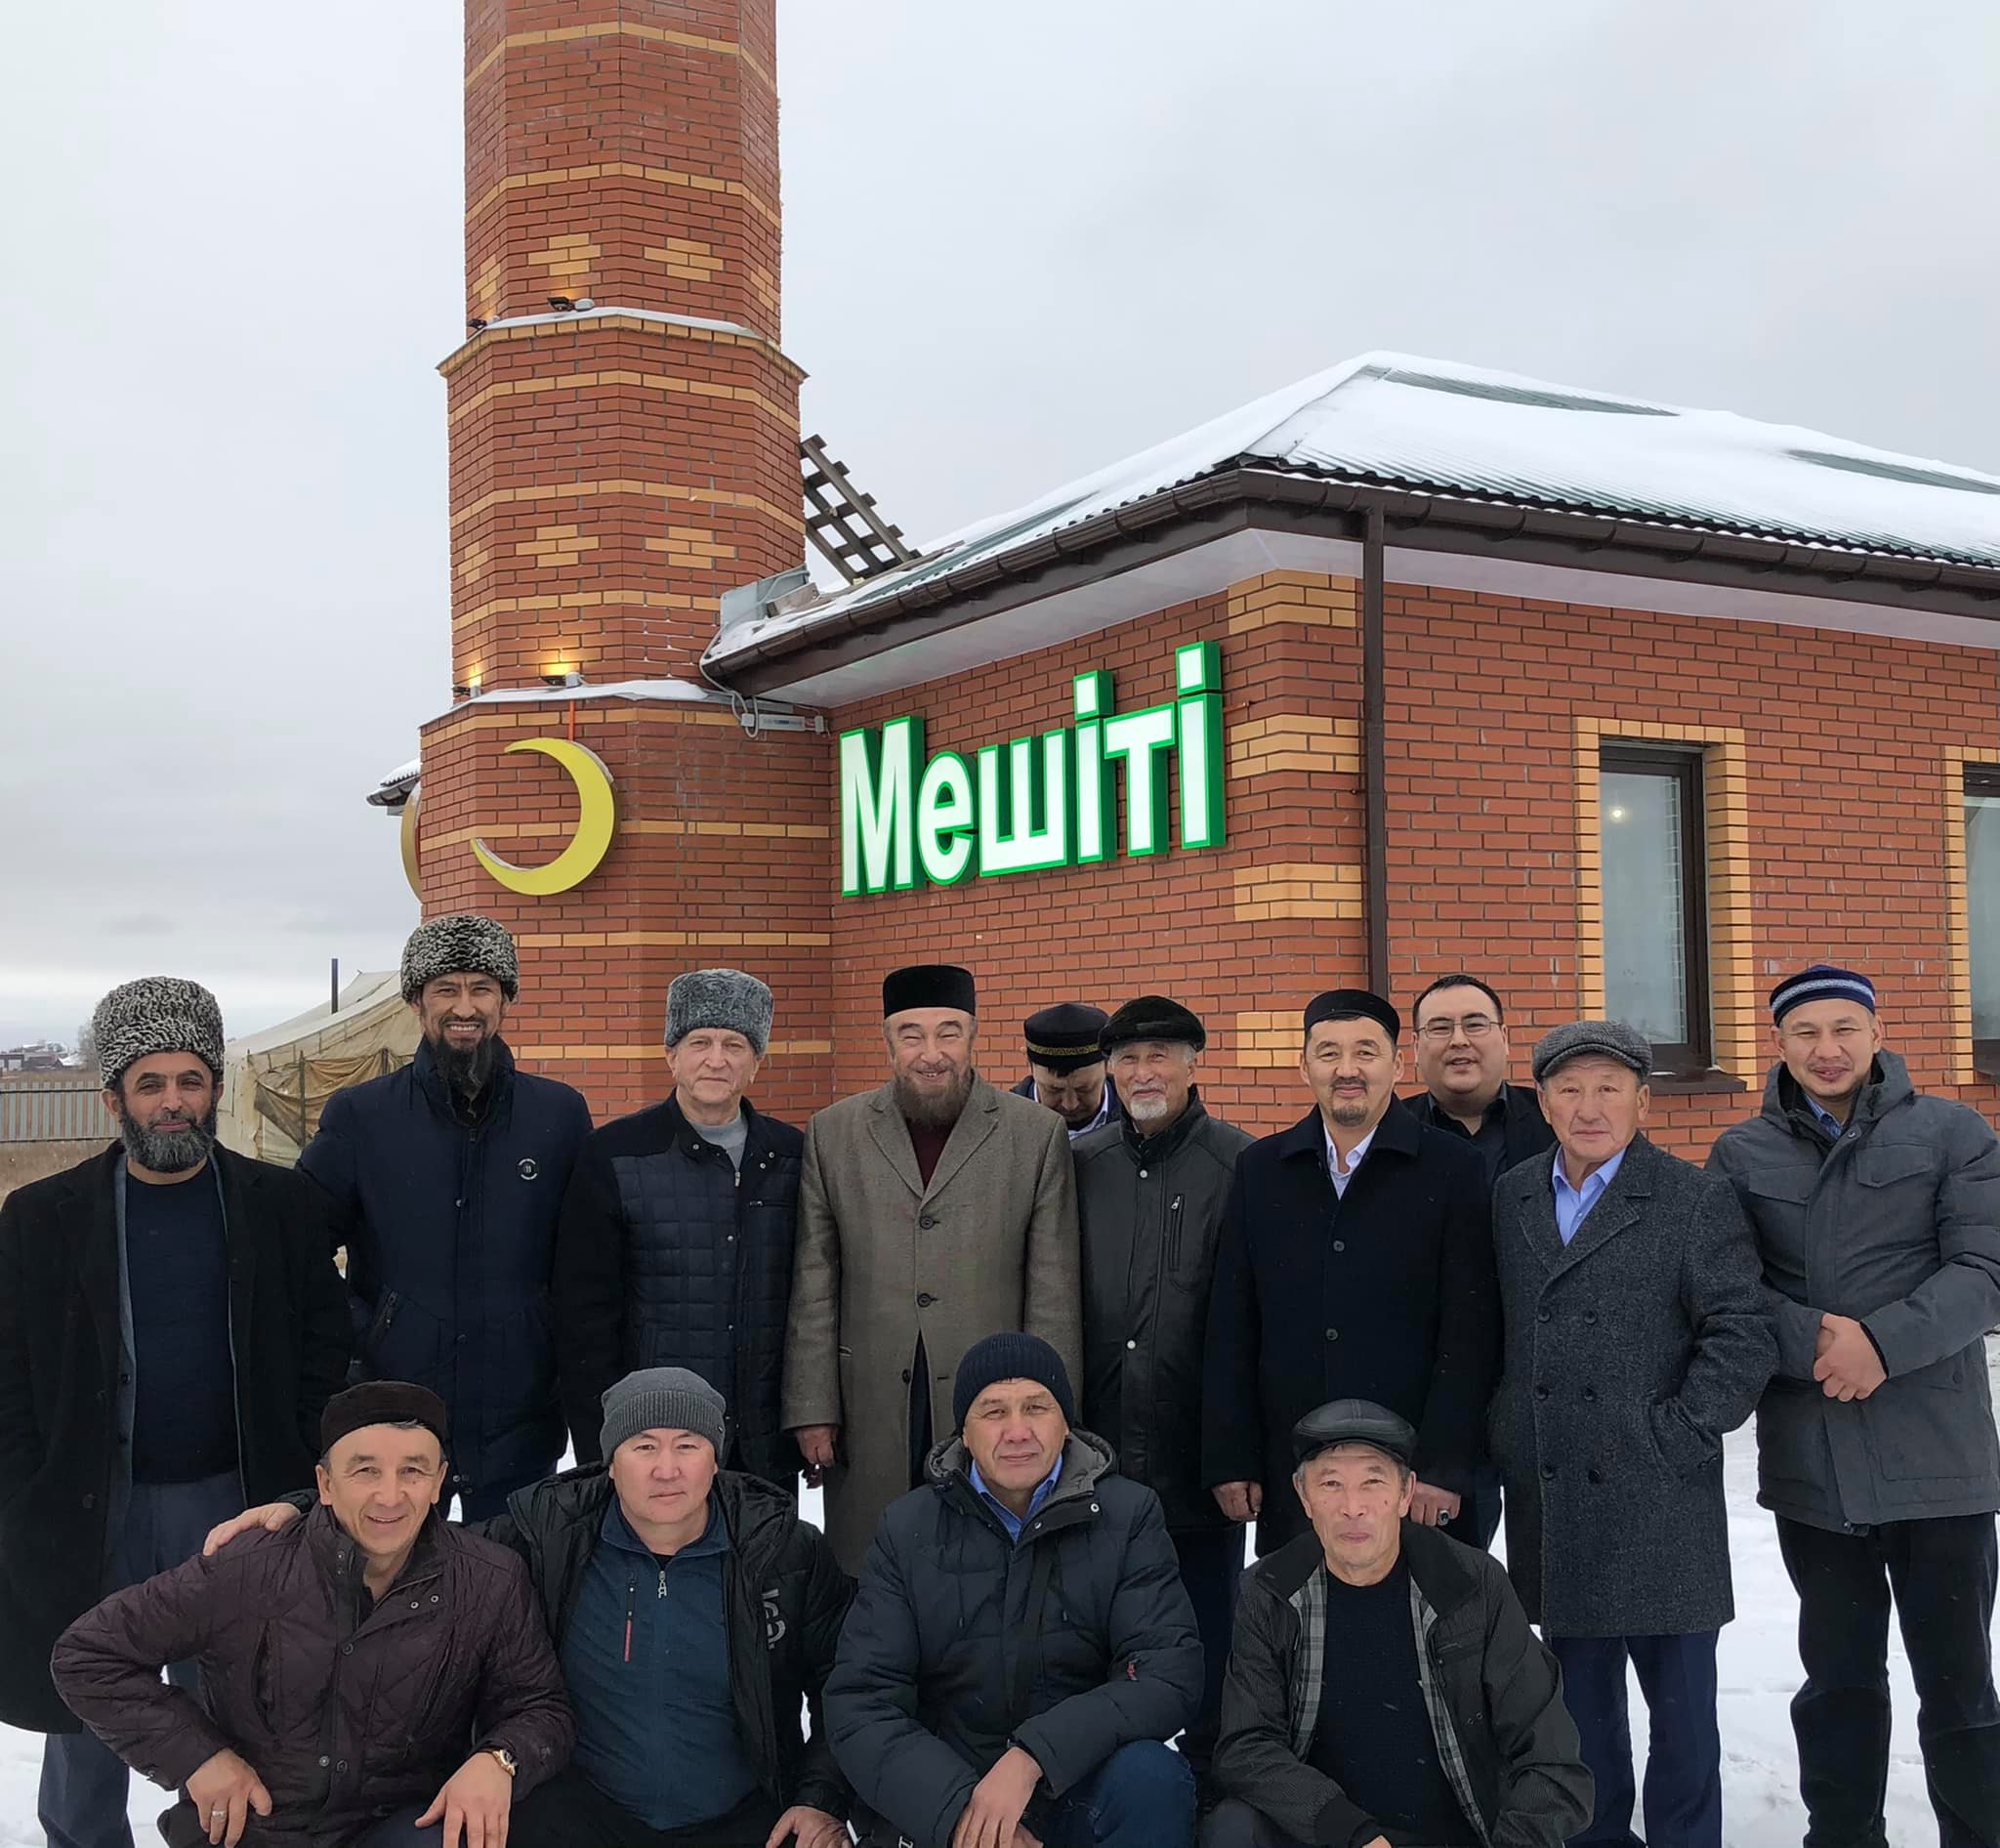 В Омской области открыли мечеть ДУМАЧР и заложили еще одну